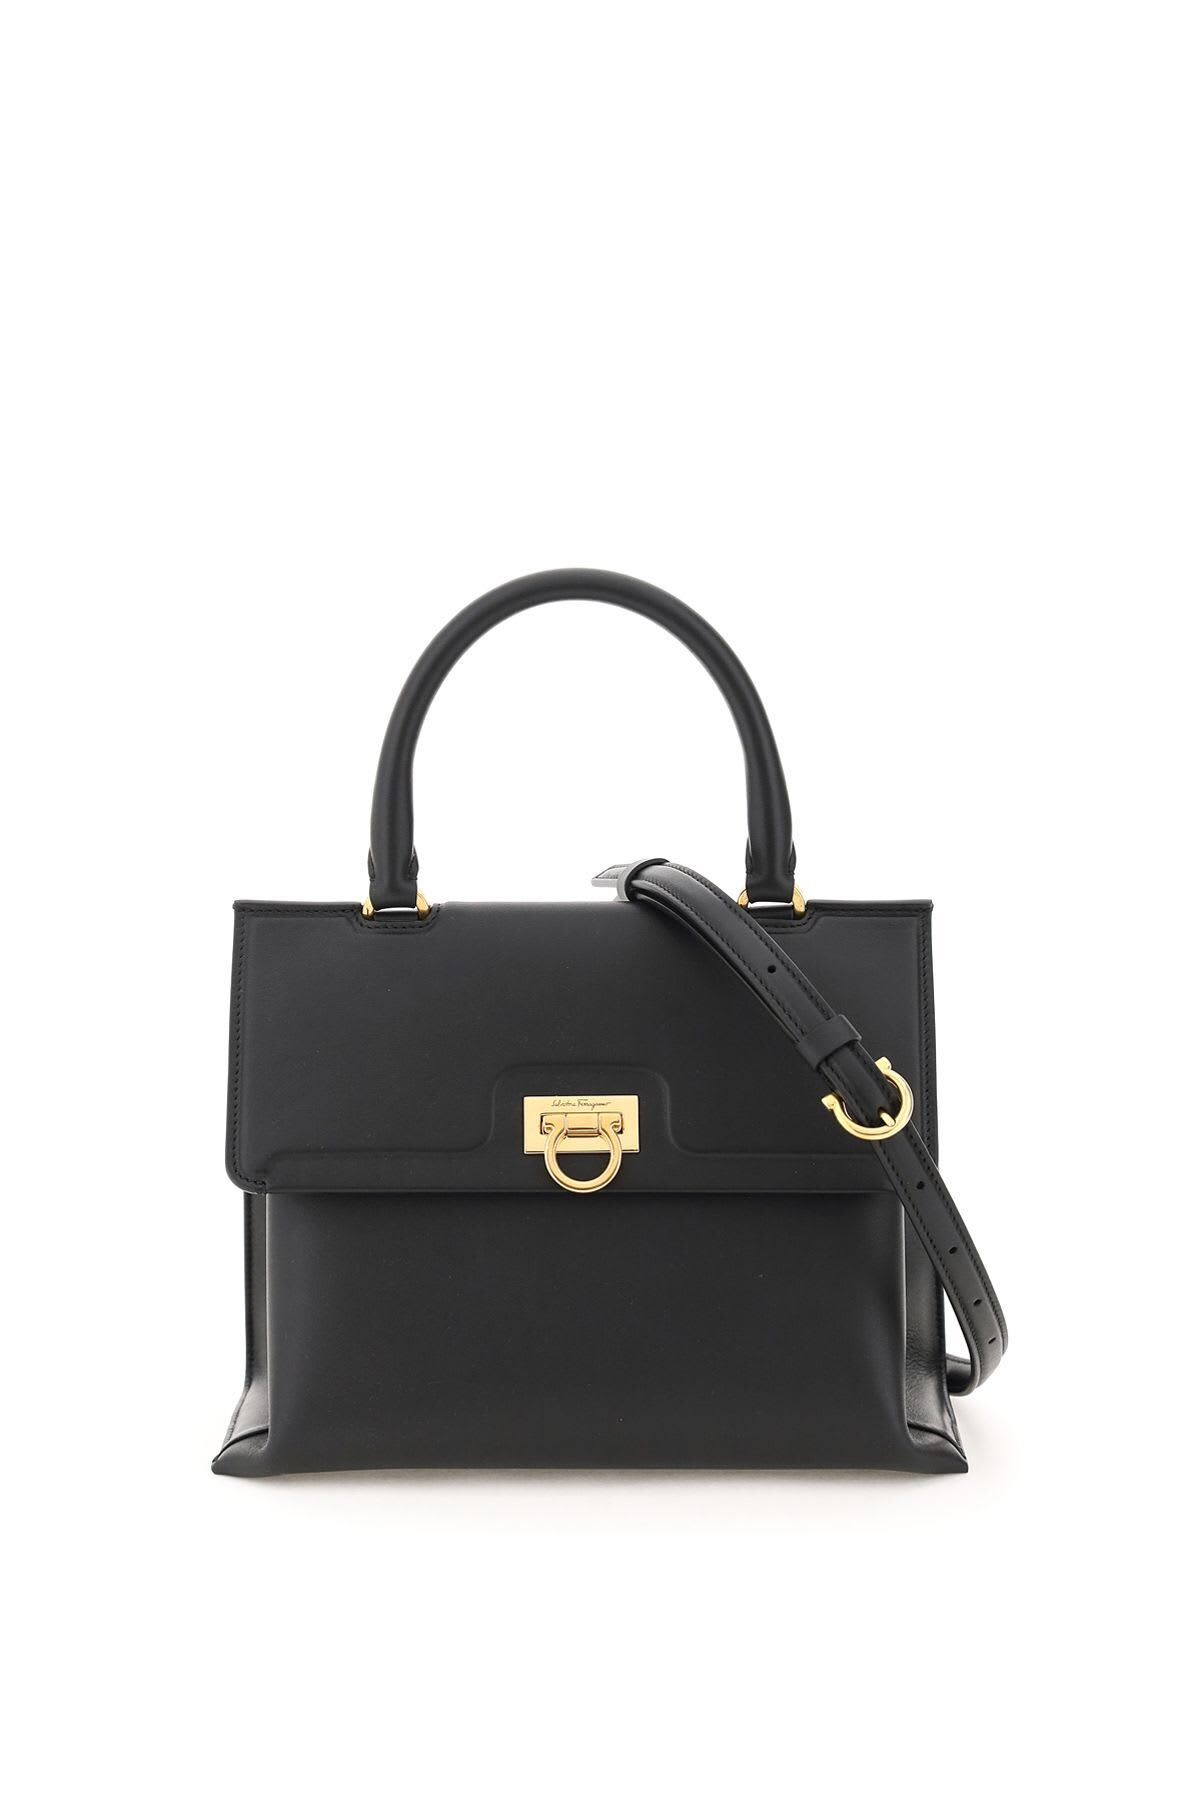 Salvatore Ferragamo Trifolio Handbag in black